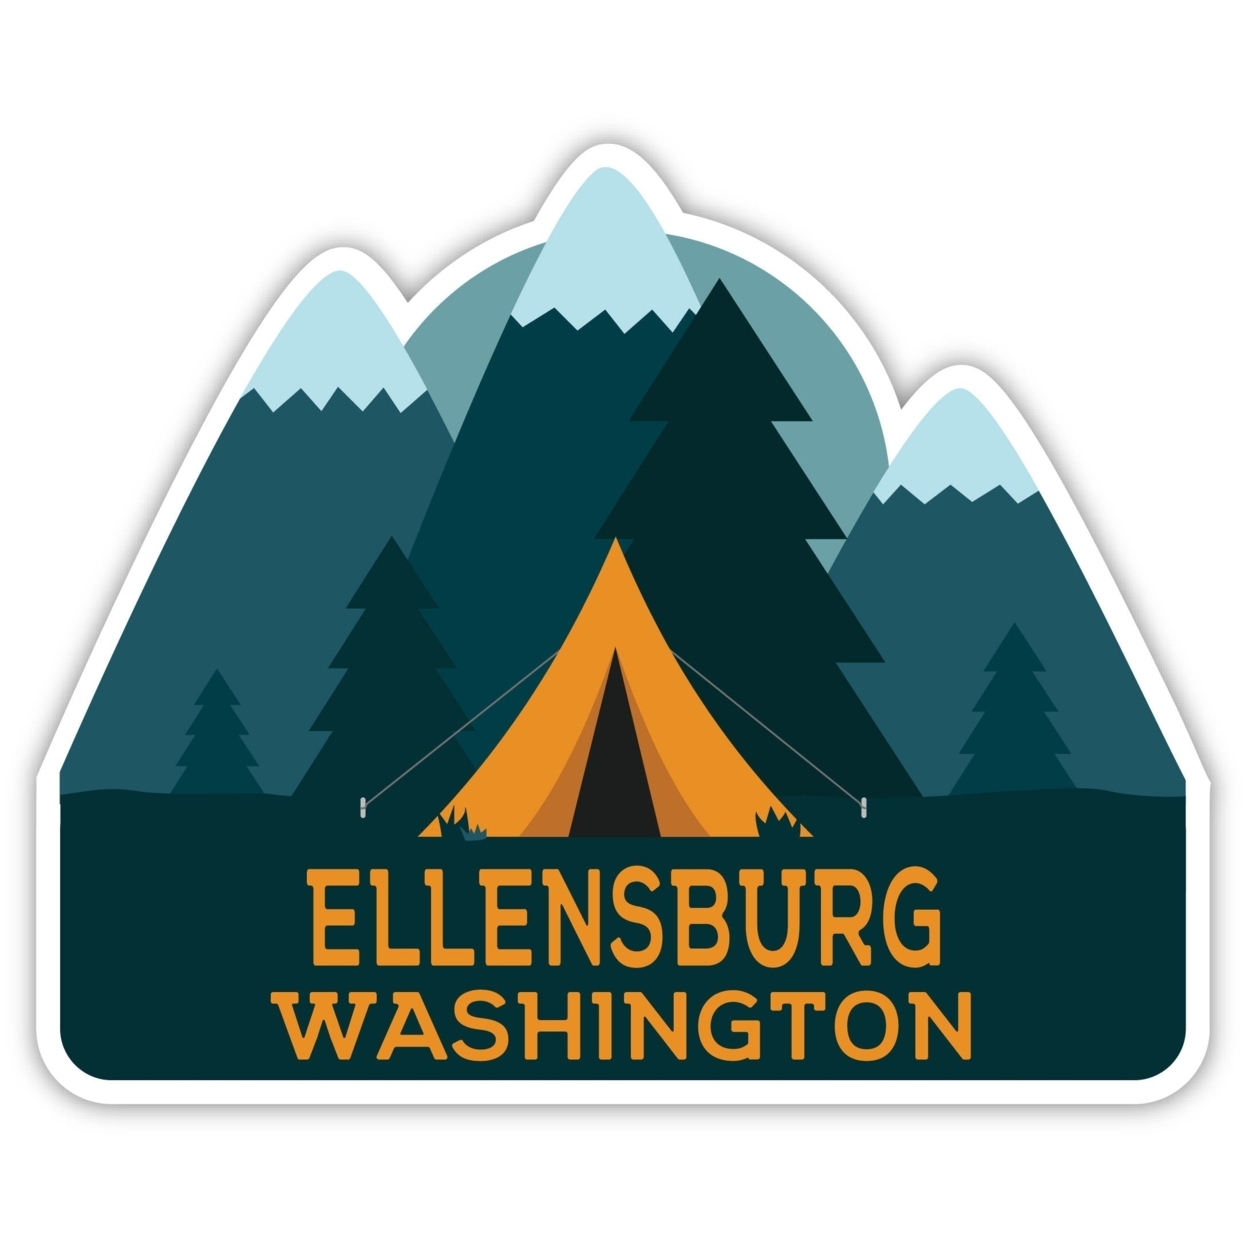 Ellensburg Washington Souvenir Decorative Stickers (Choose Theme And Size) - Single Unit, 6-Inch, Tent